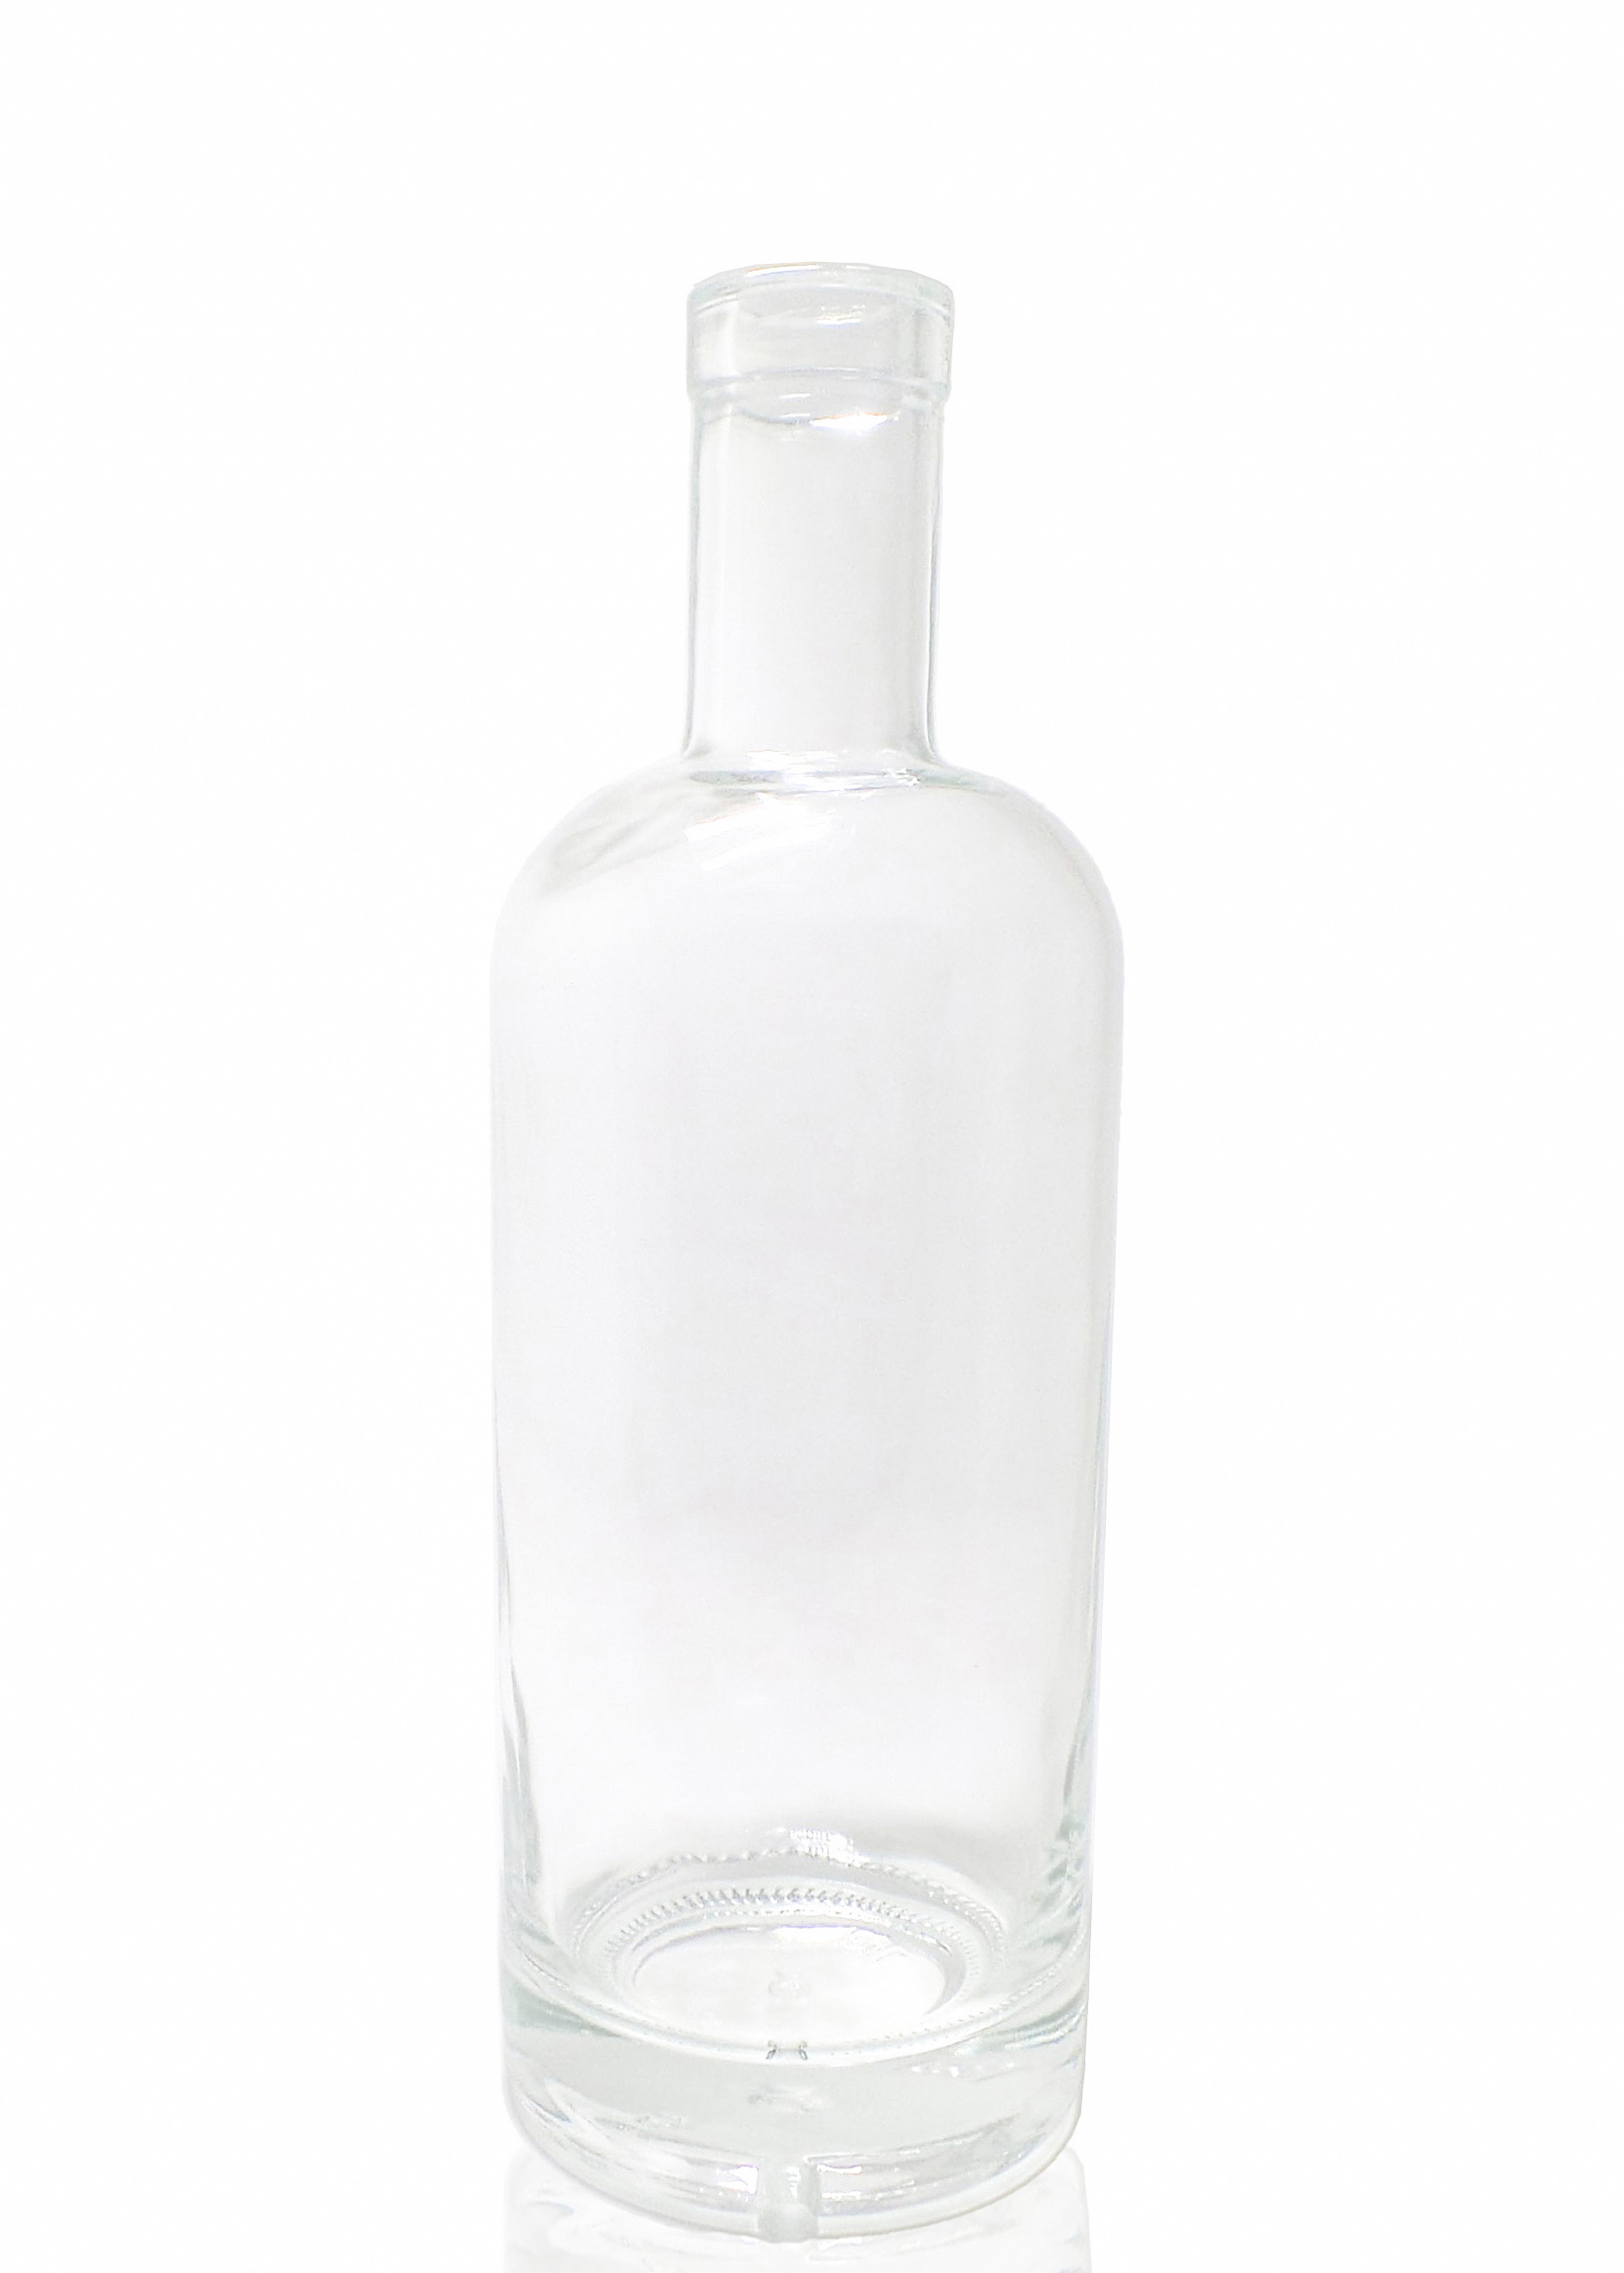 clear glass bottles liquor bottle vodka bottles 1L 